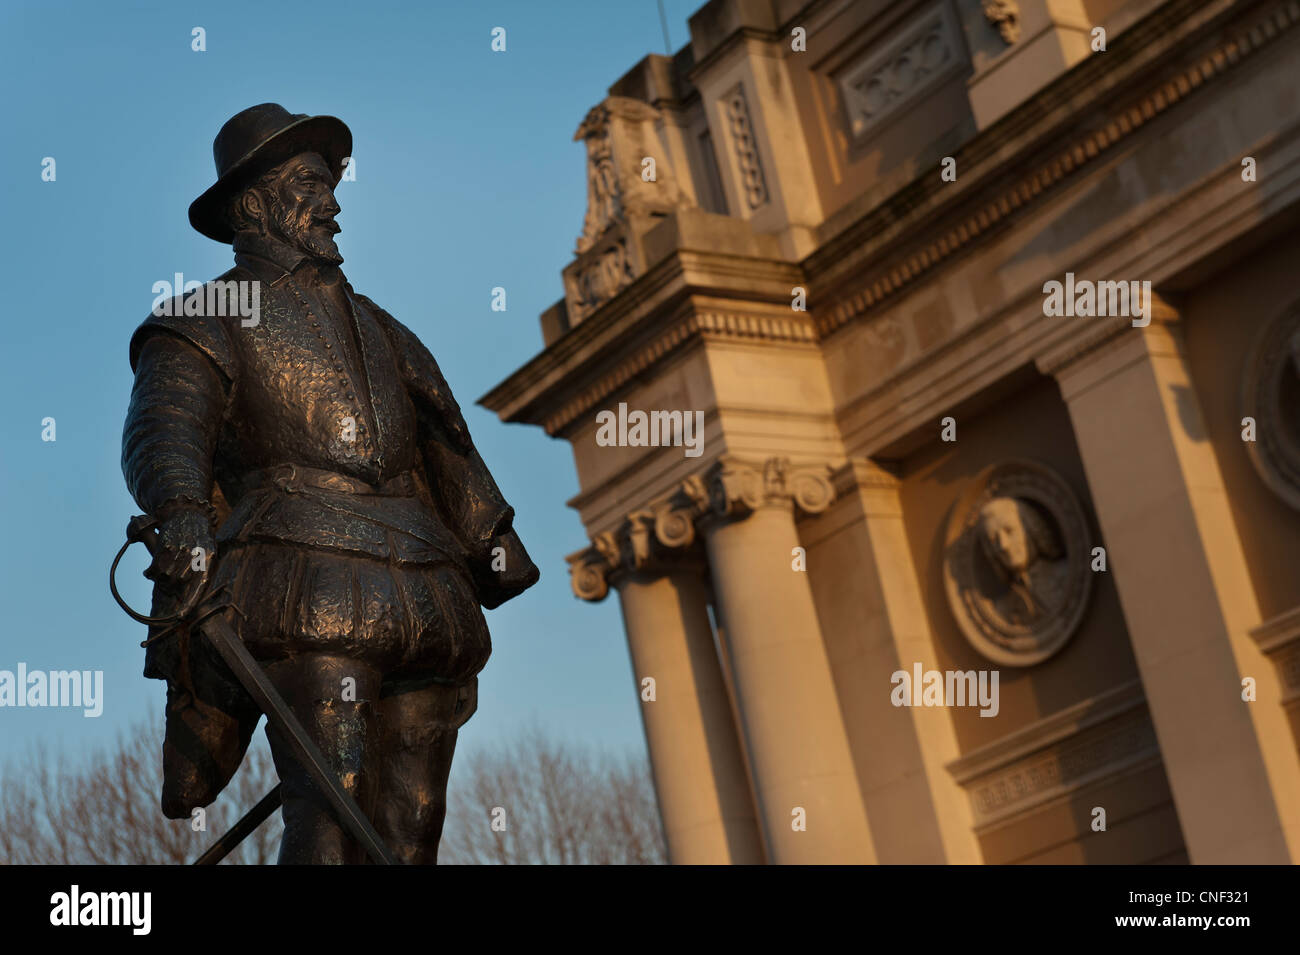 La statue de Sir Walter Raleigh statue à l'extérieur du bâtiment de découvrir Greenwich, Londres, Royaume-Uni Banque D'Images